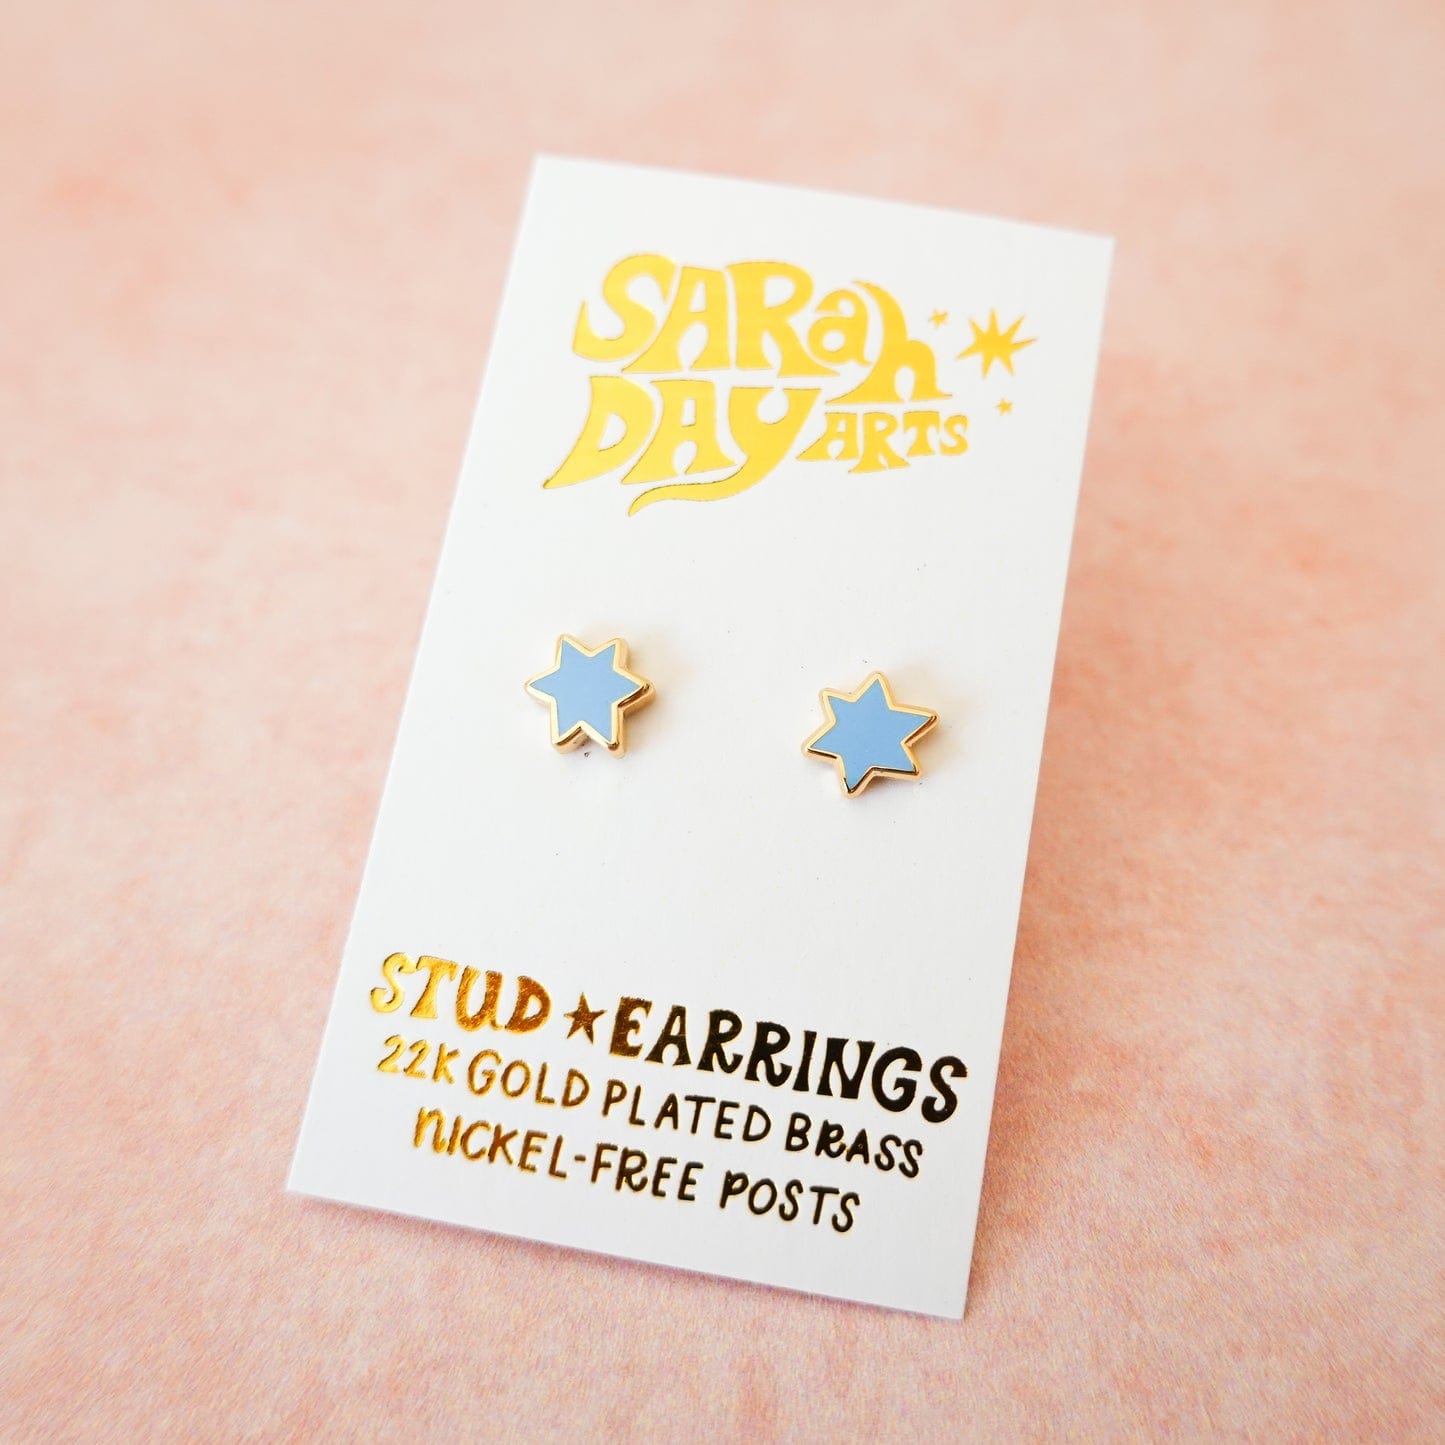 Sarah Day Arts Earrings Mini Magen David Stud Earrings - Sky Blue